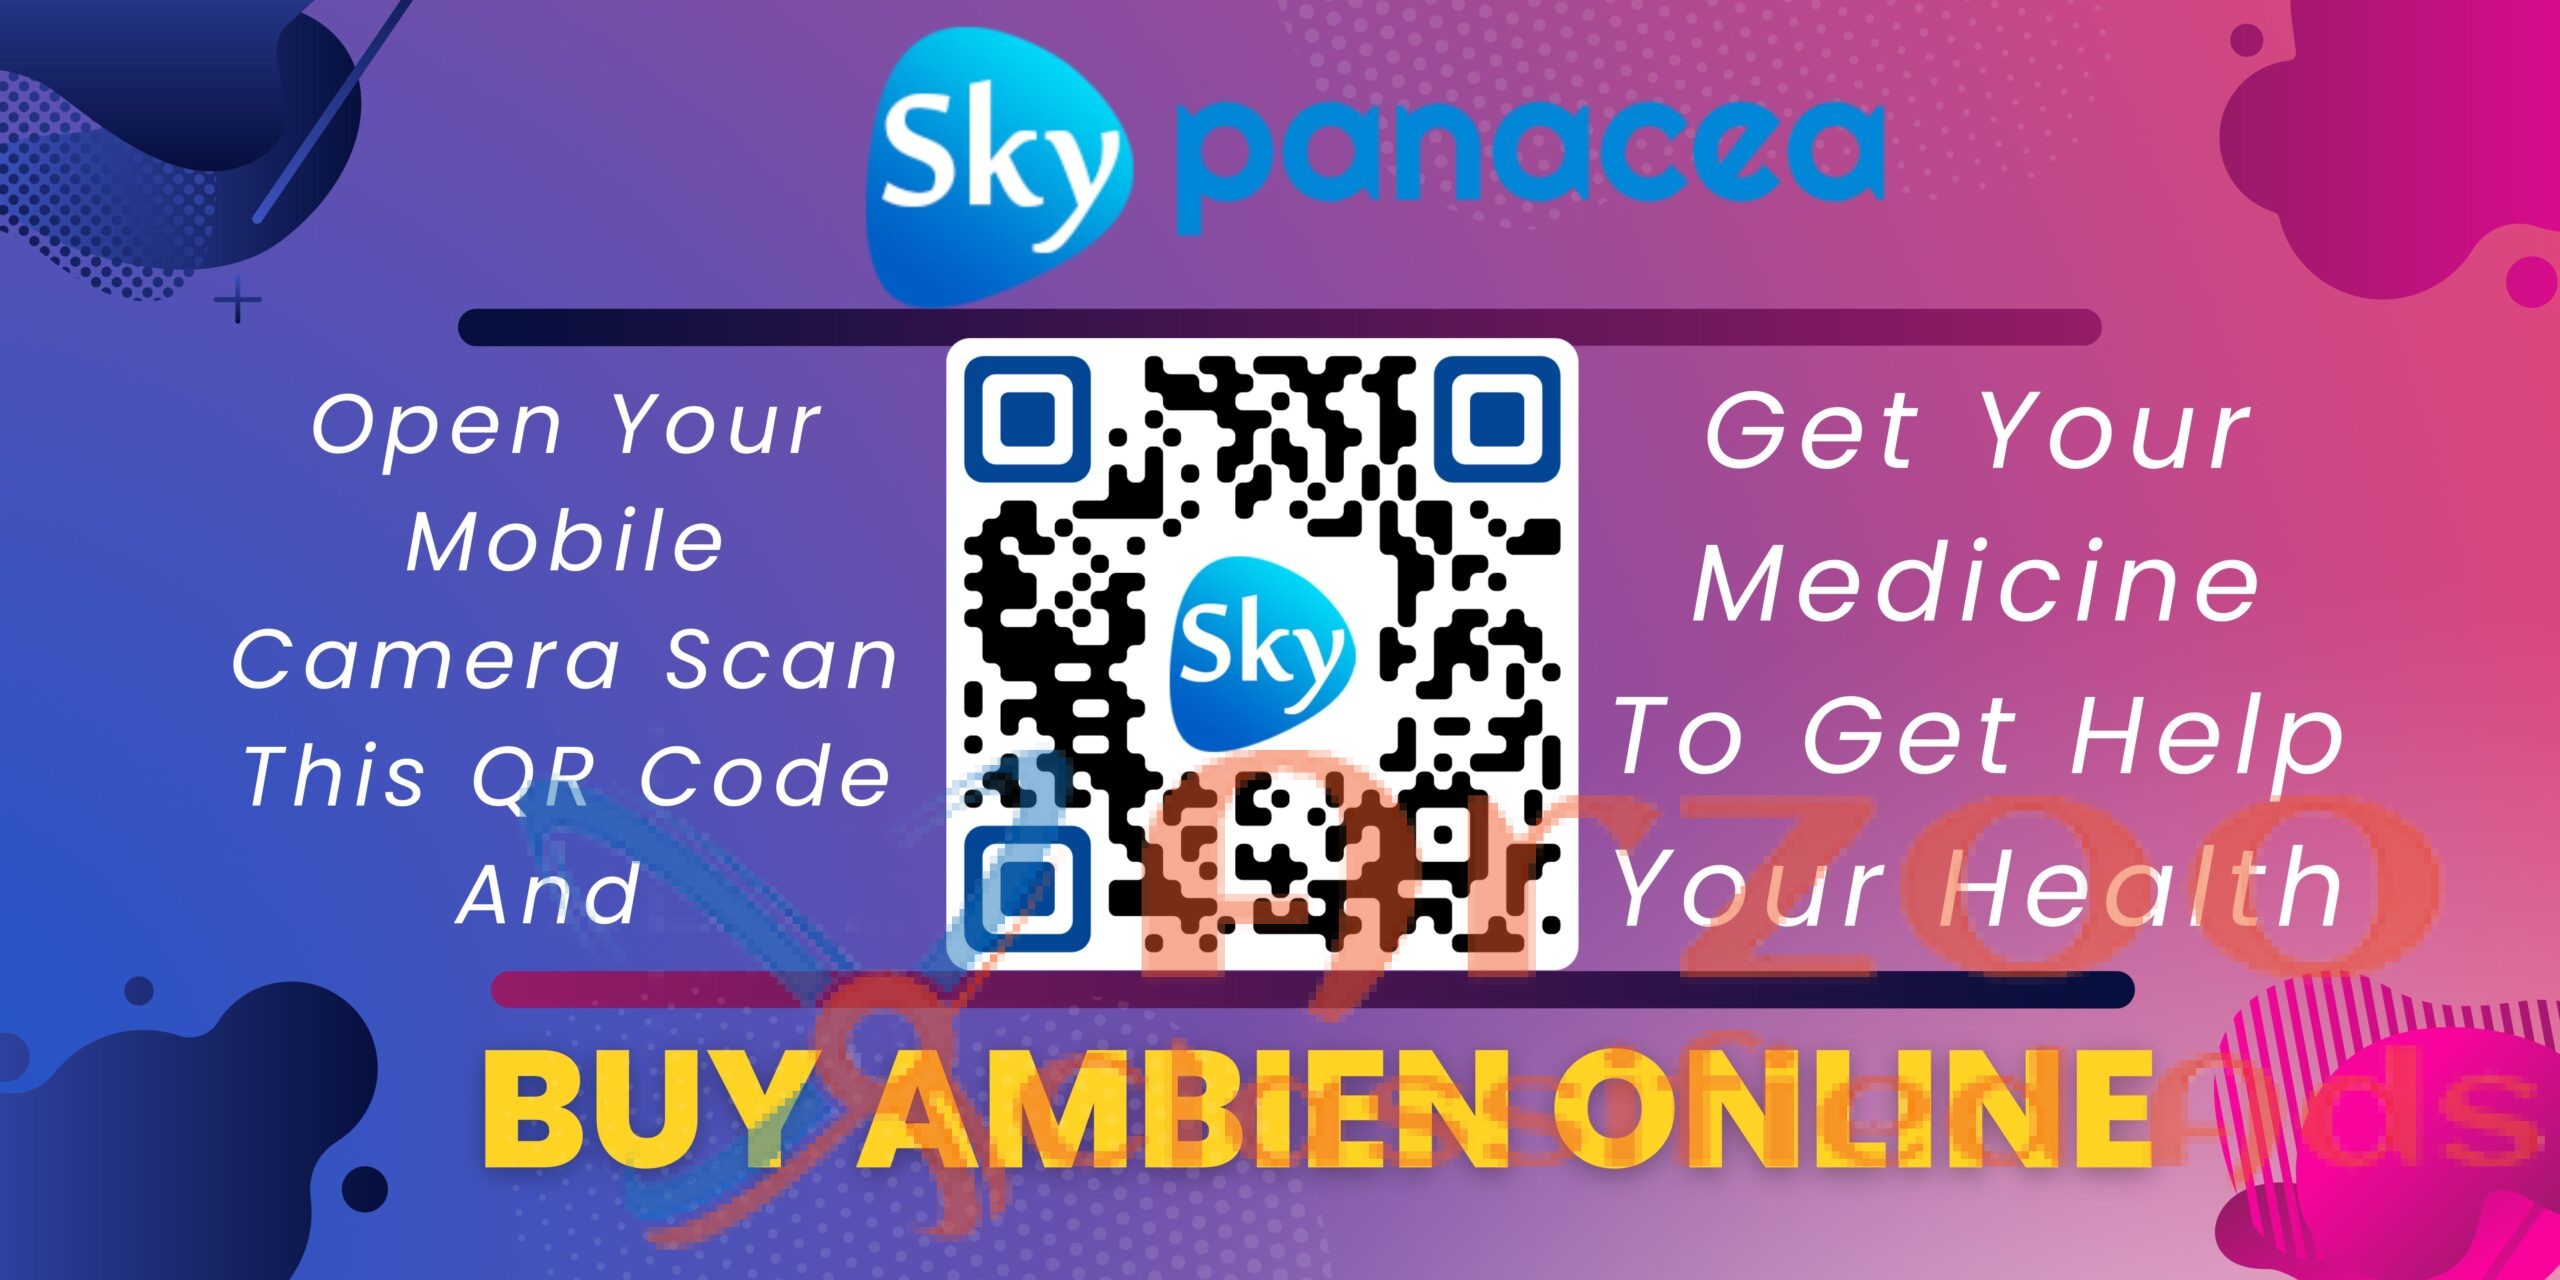 Buy Ambien (Zolpidem) Online